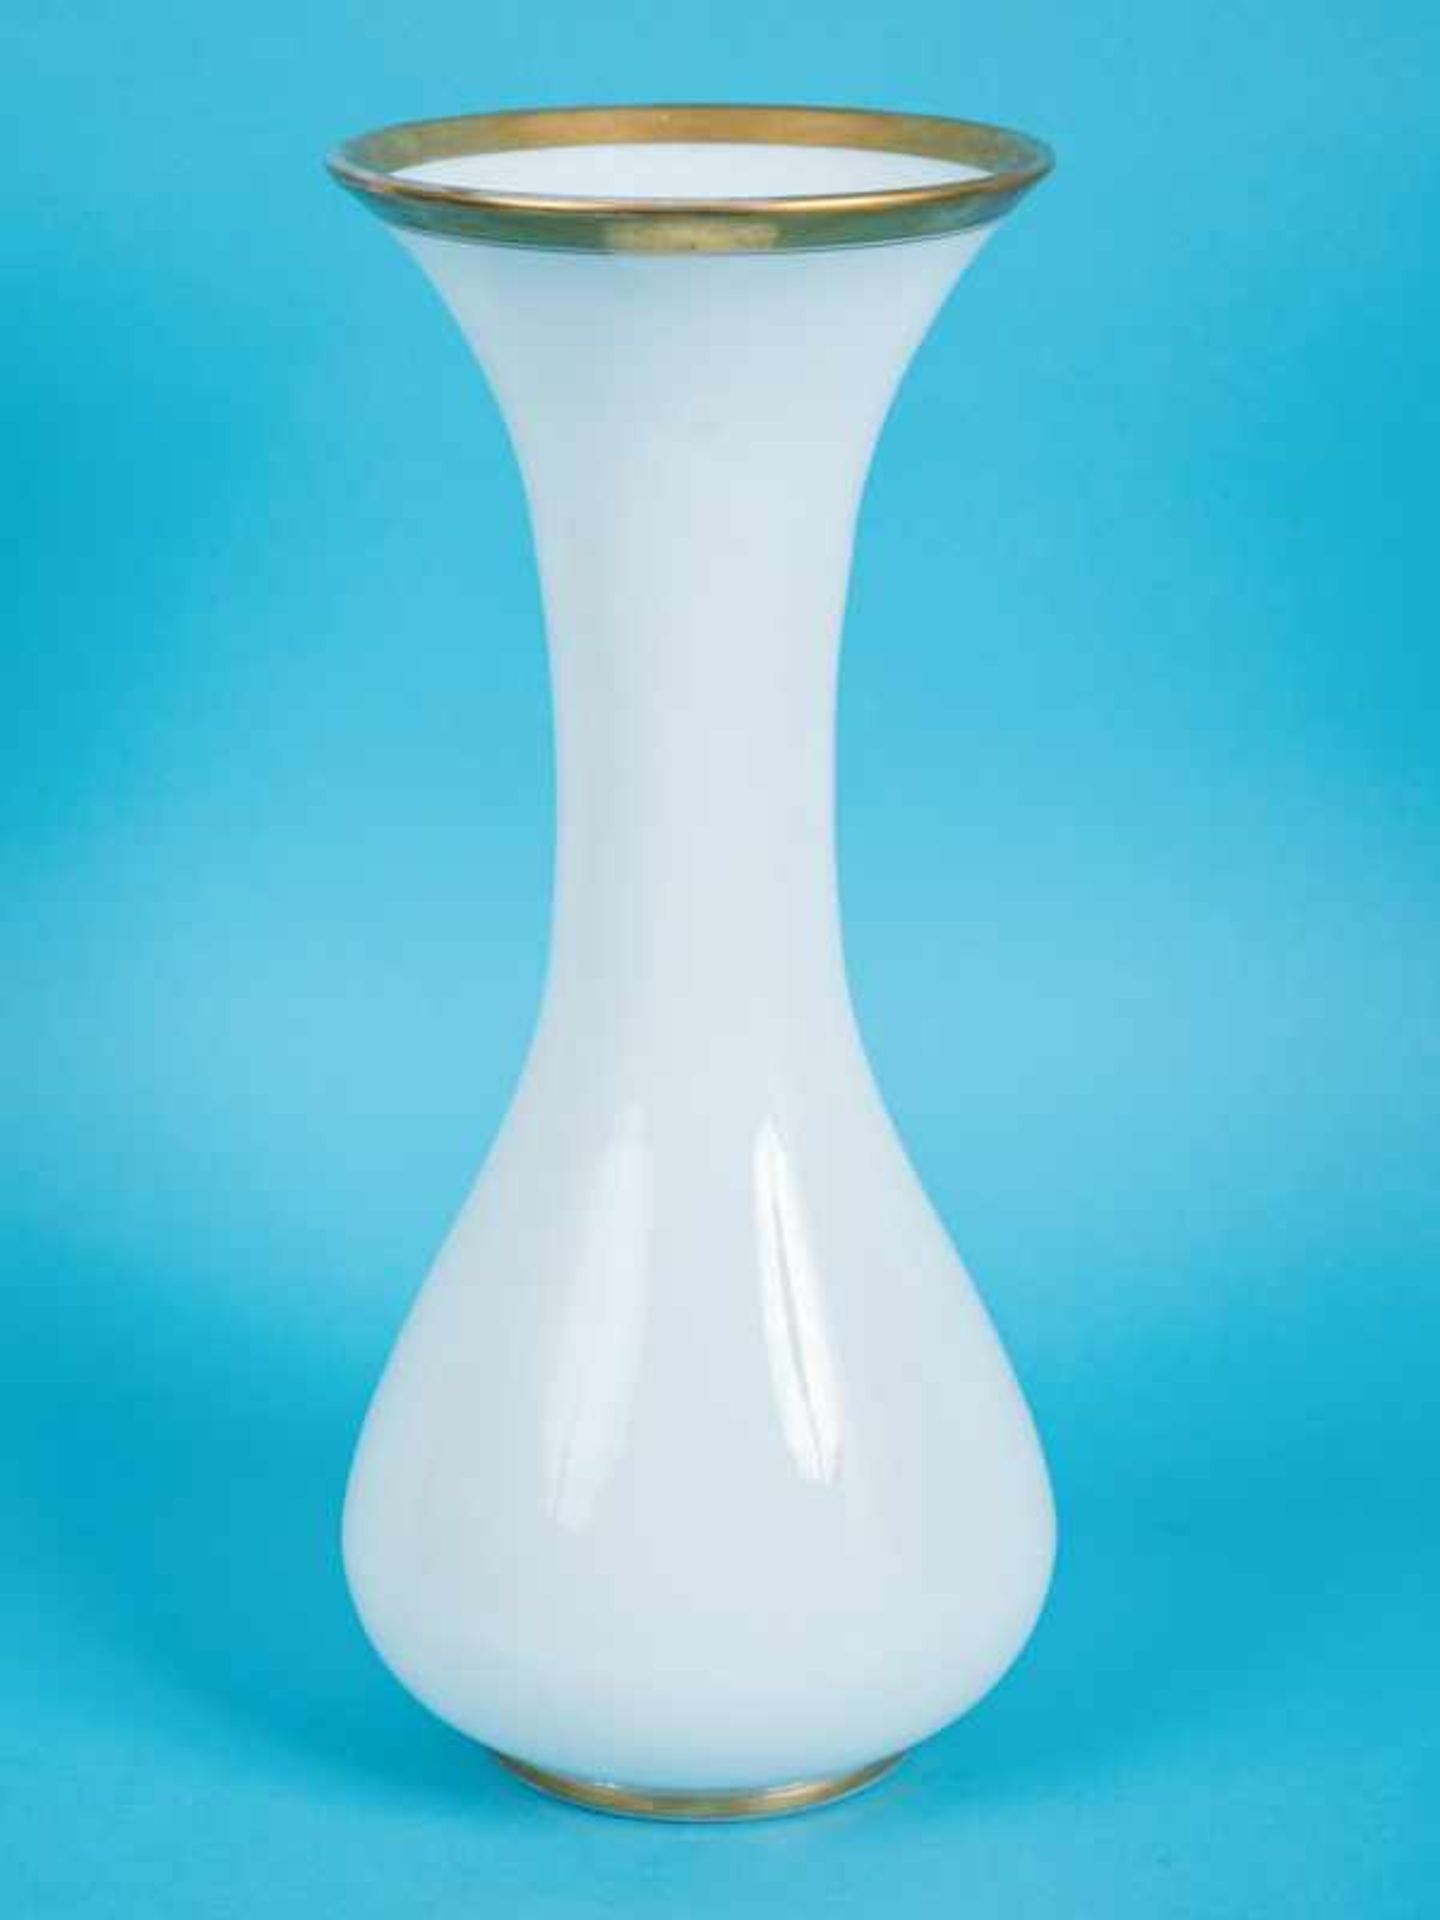 Große Opalinglas-Vase, 19. Jh. Opalin-/Milchglas mit Goldrändern; gebauchte Form mit hohem, sich